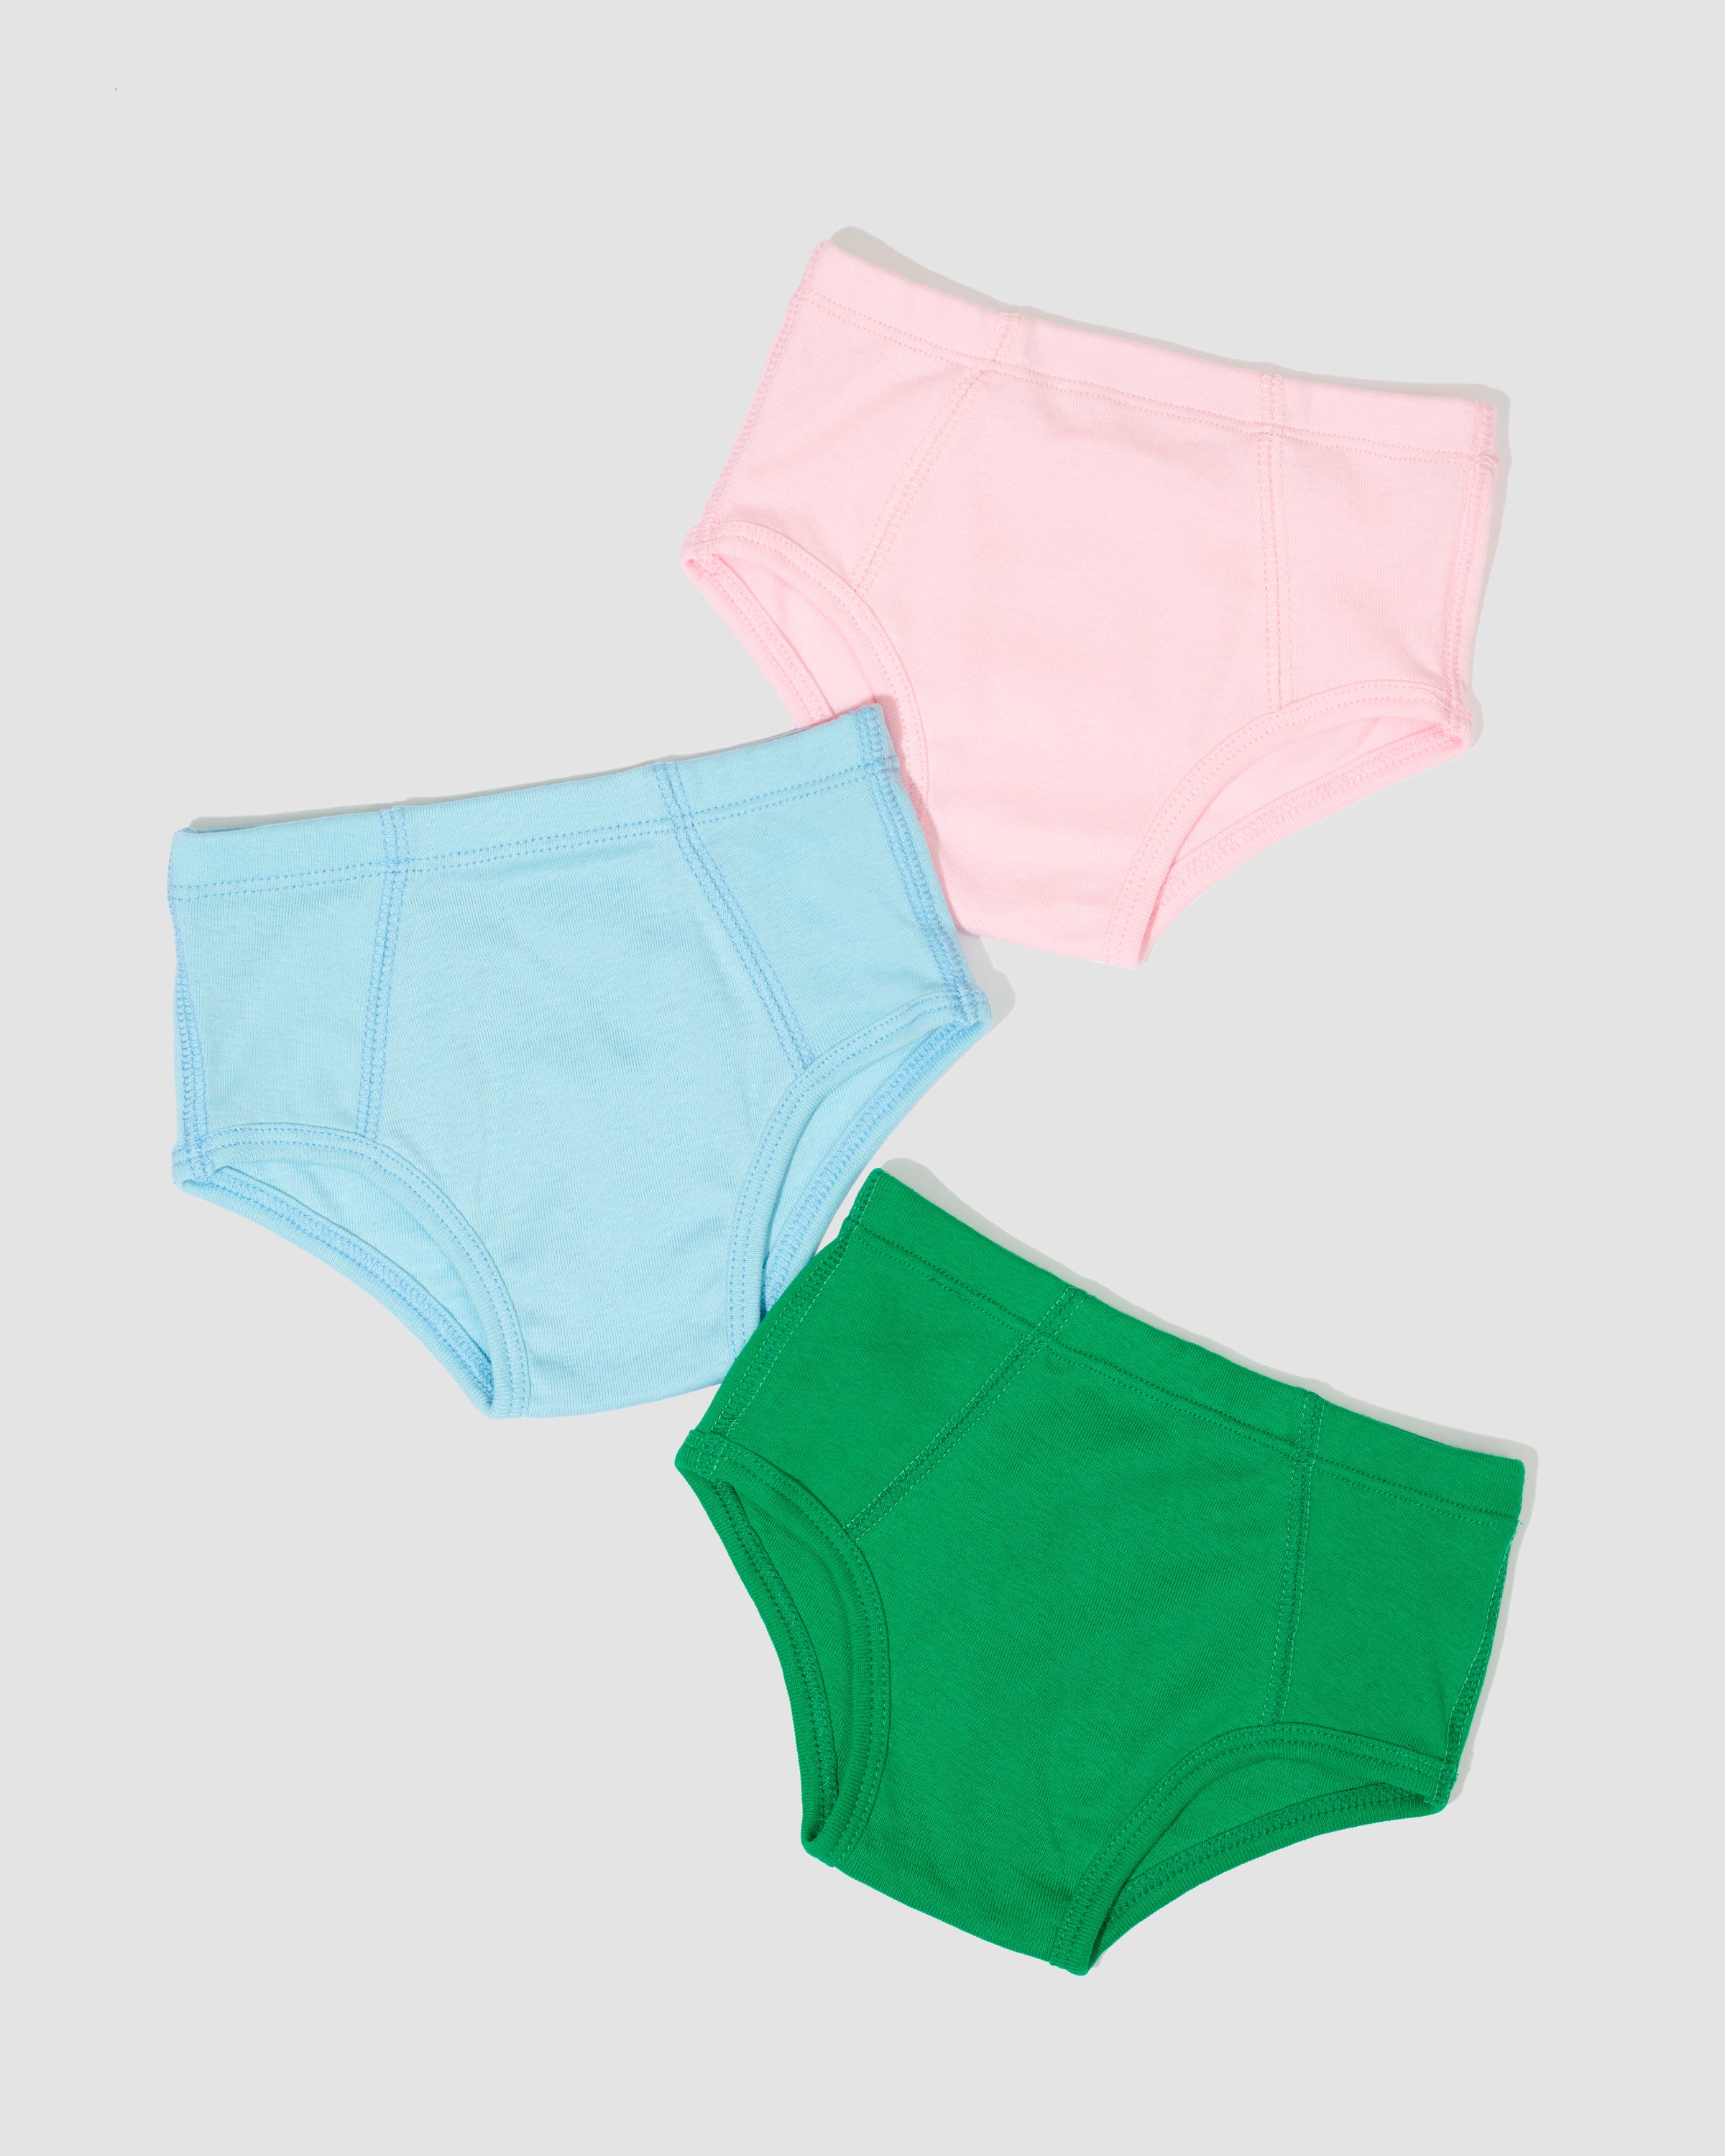 Sash Kids Boutique - Bebe underwear 😍 @sashkidsboutique